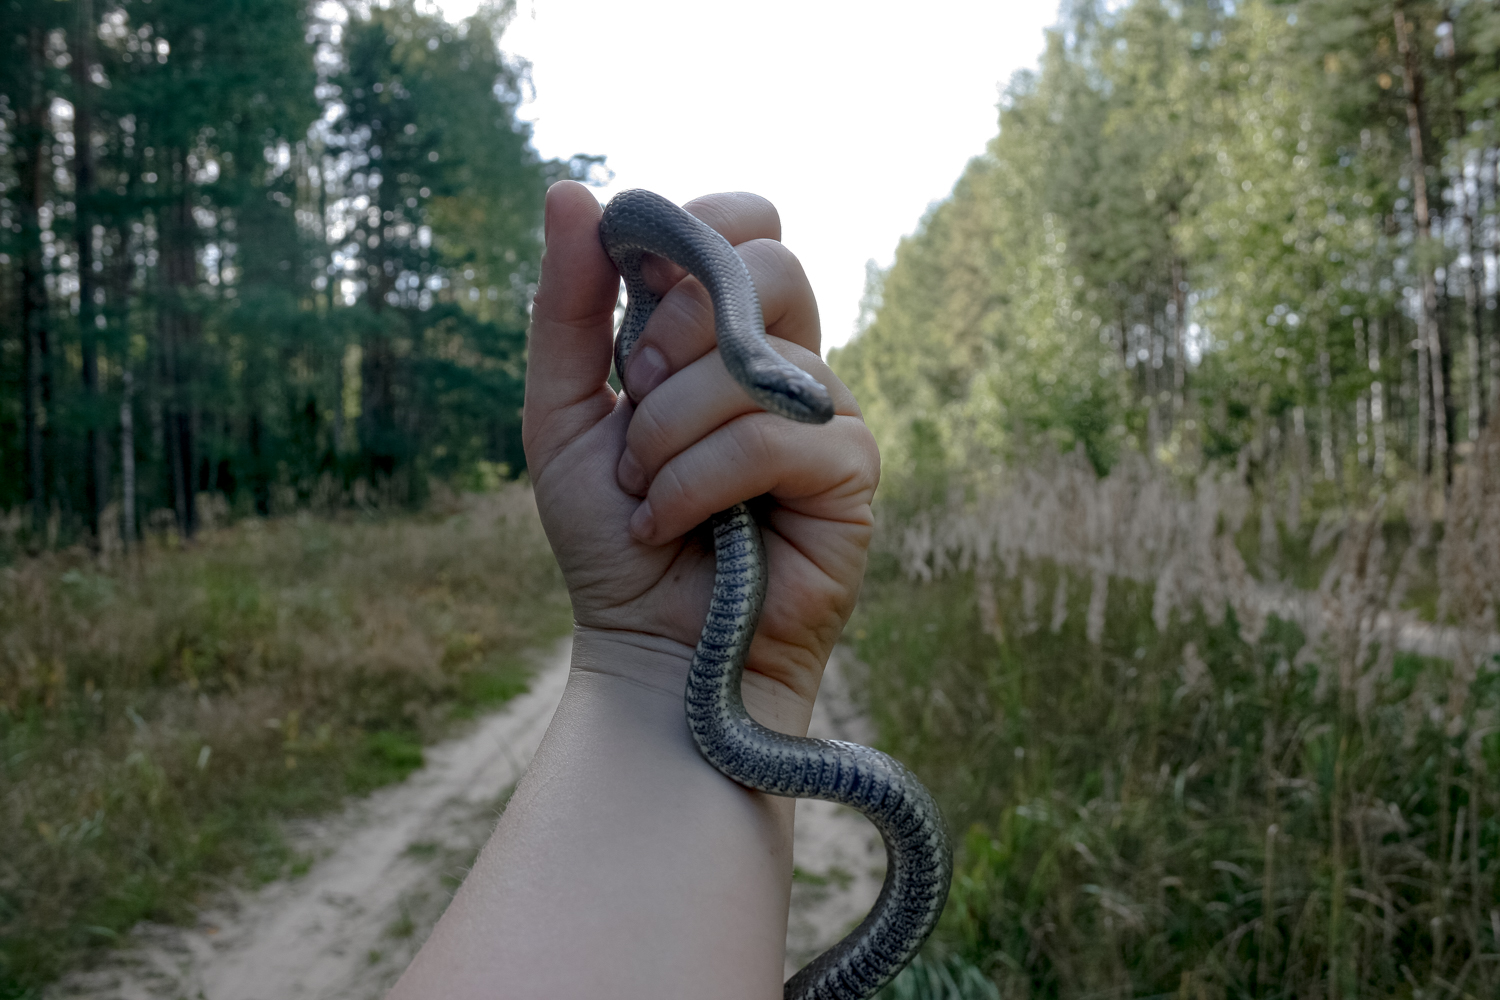 Змеи Беларуси